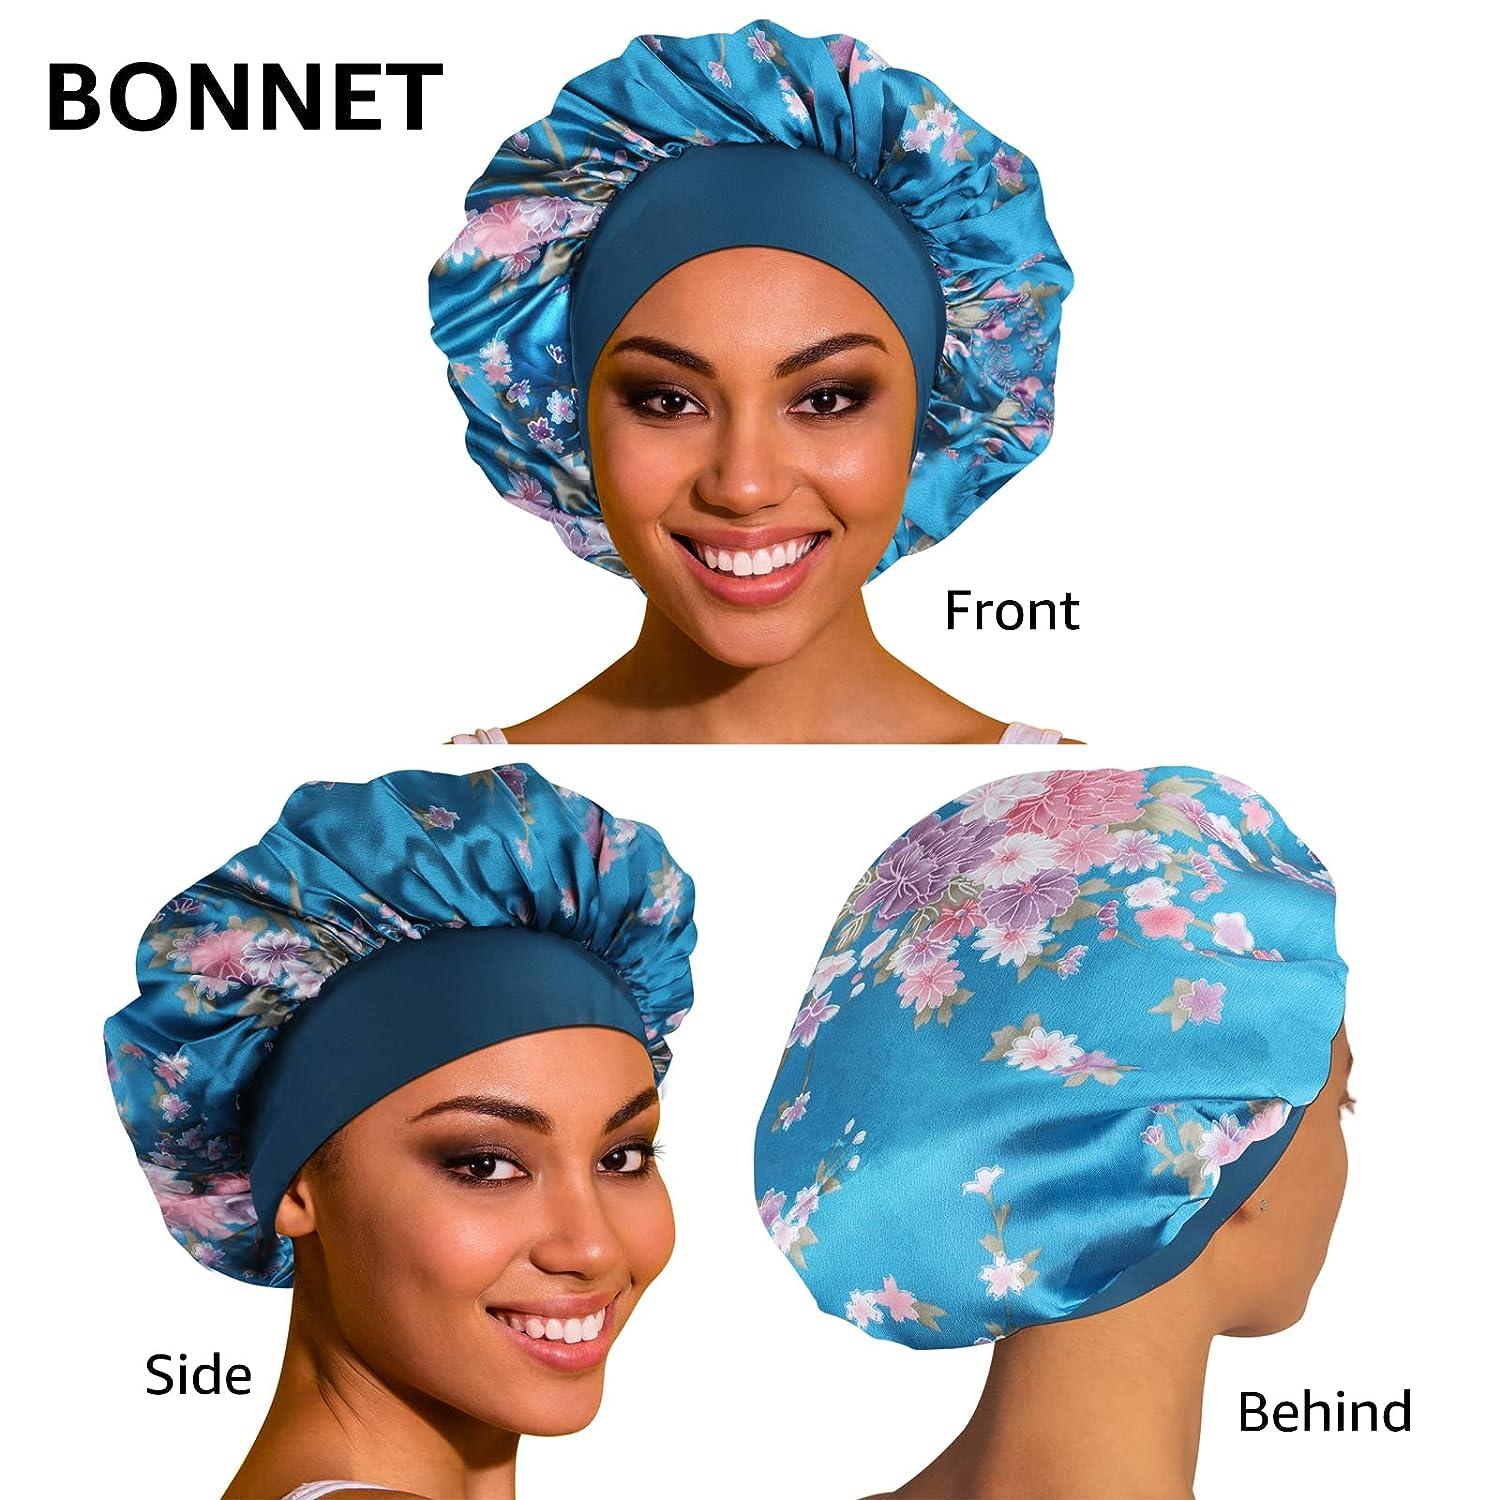 Hair Bonnet for Sleep, Sleep Hair Cap